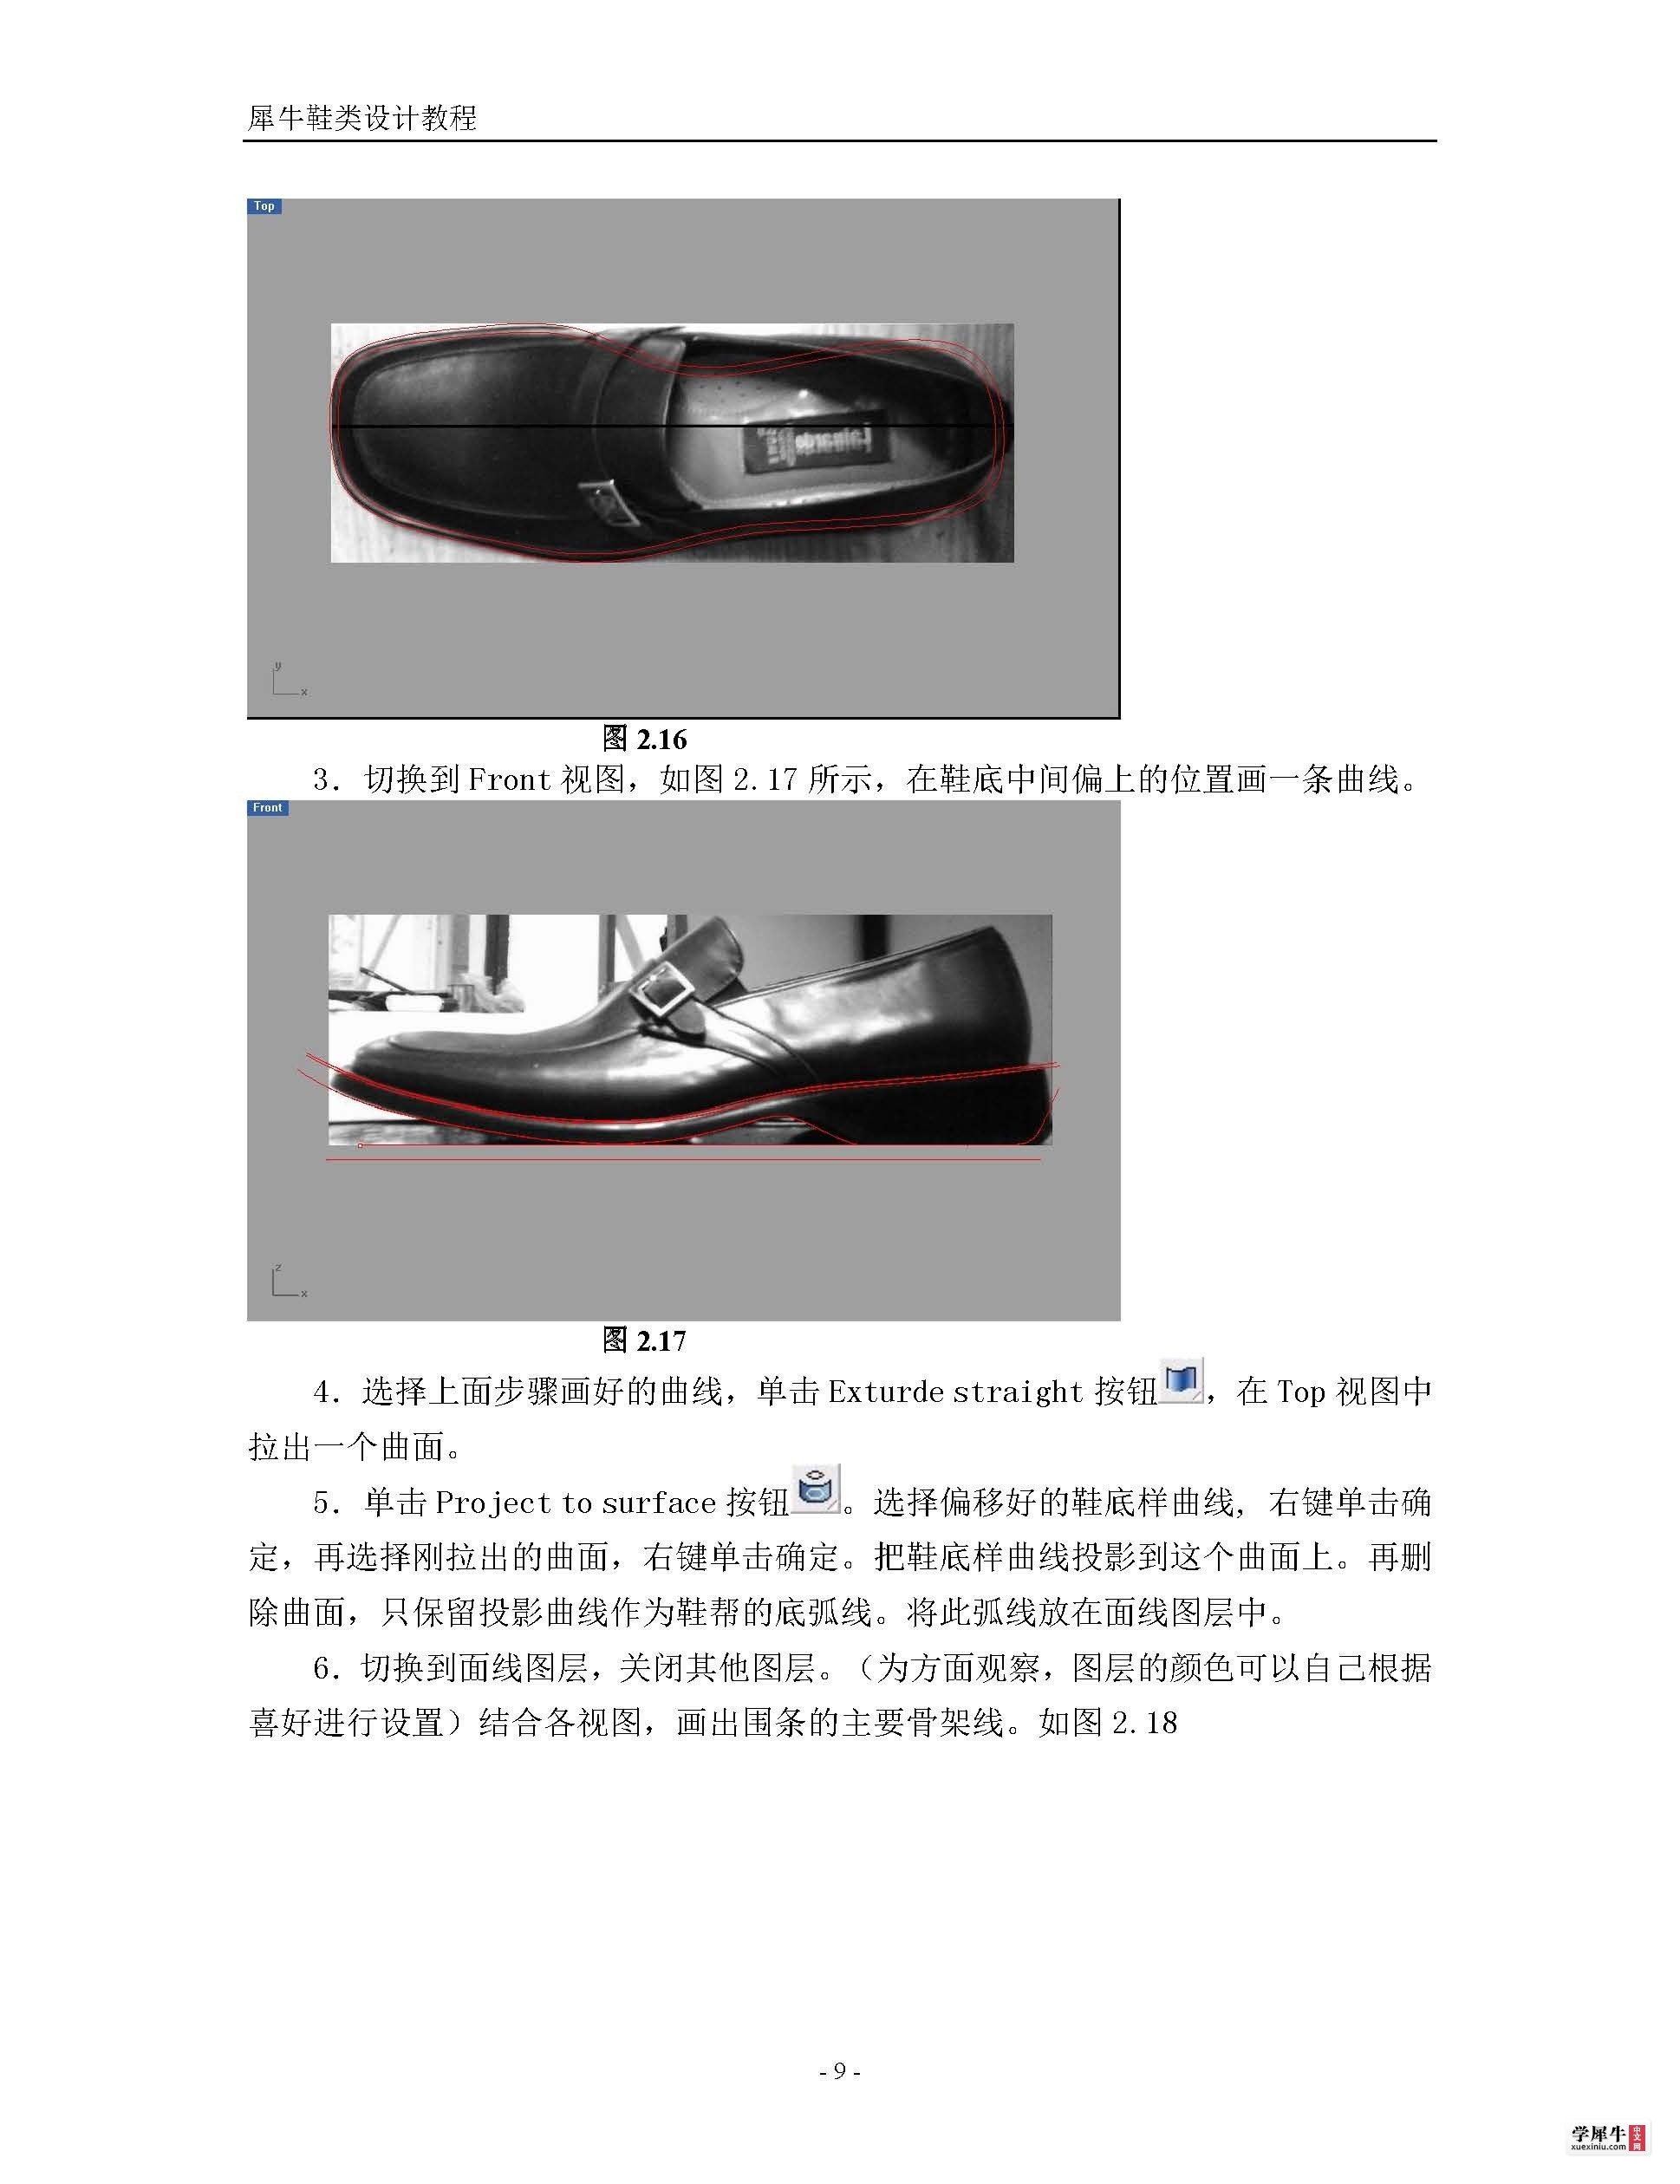 犀牛鞋类建模终极教程(转)_页面_09.jpg